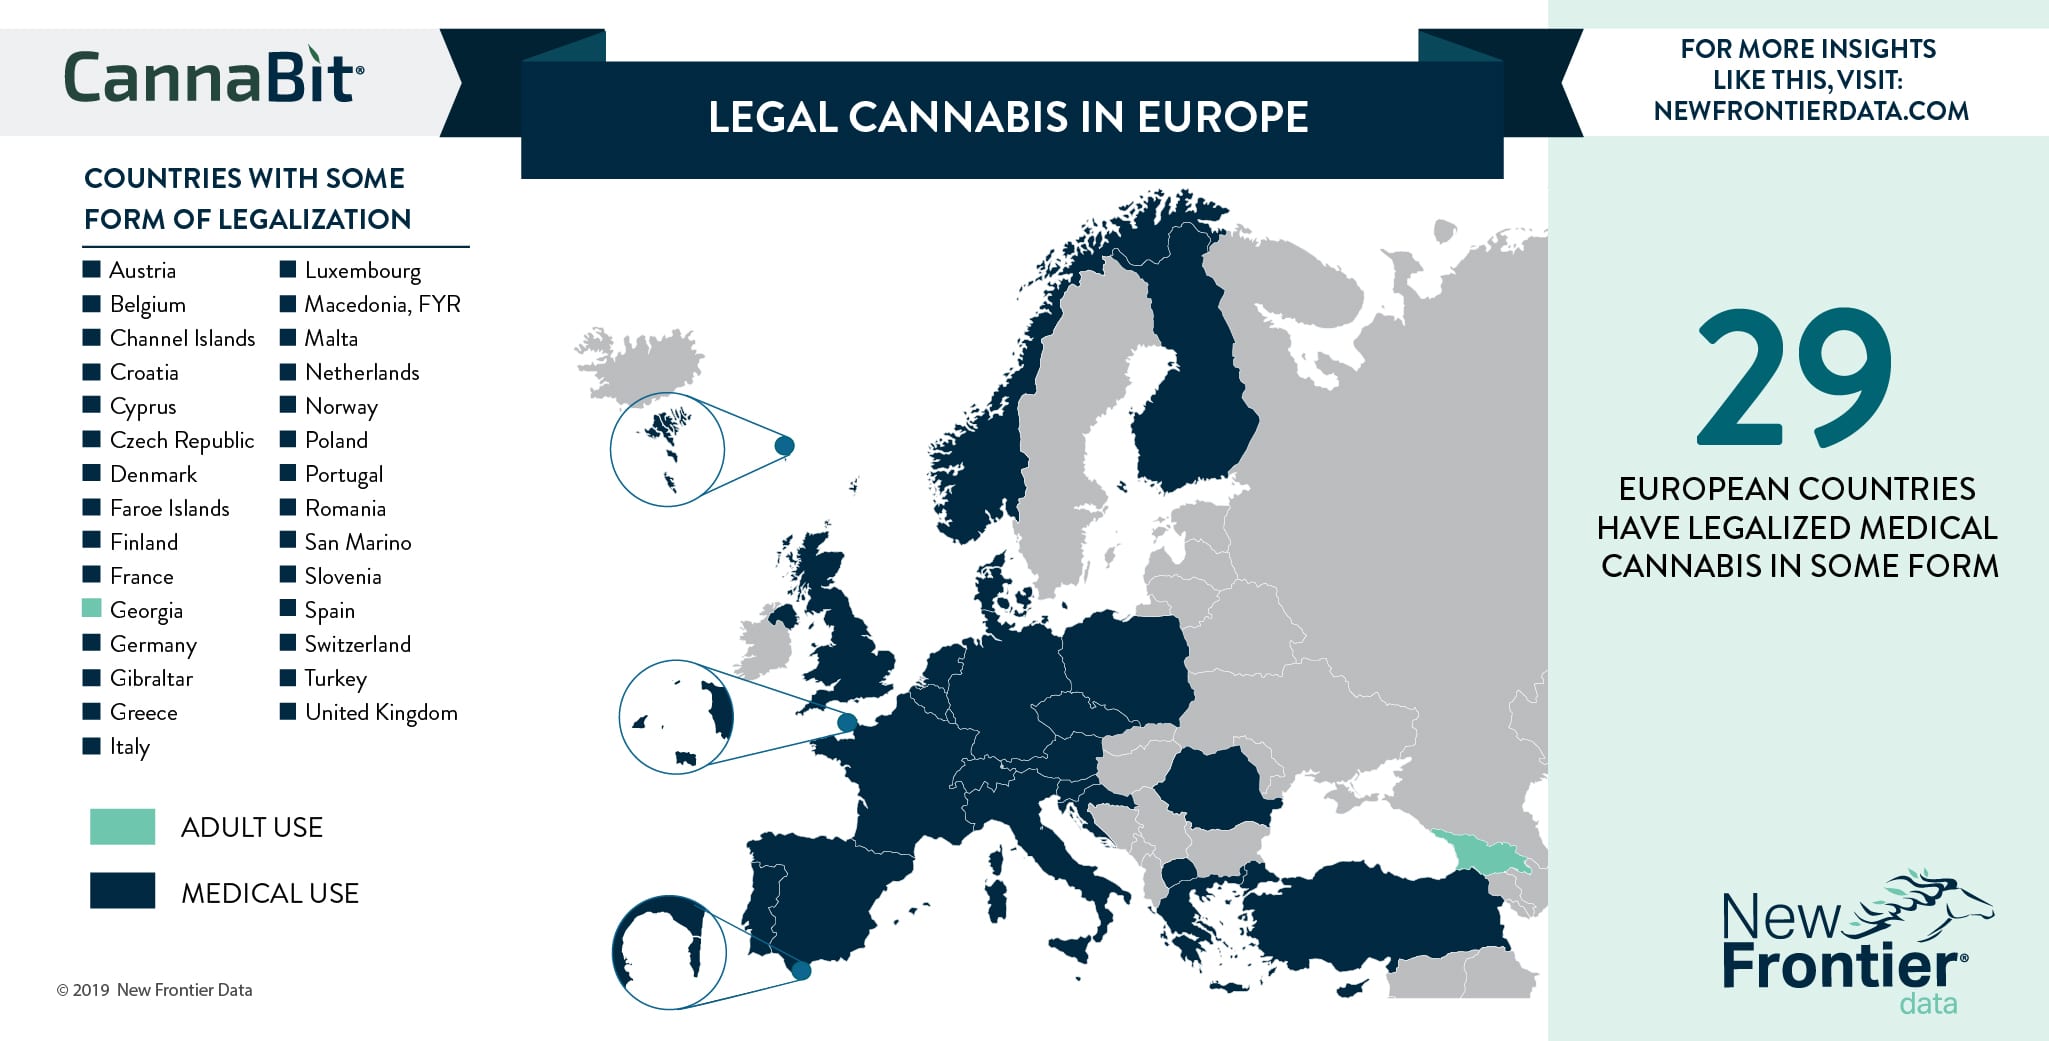 Legal Cannabis in Europe